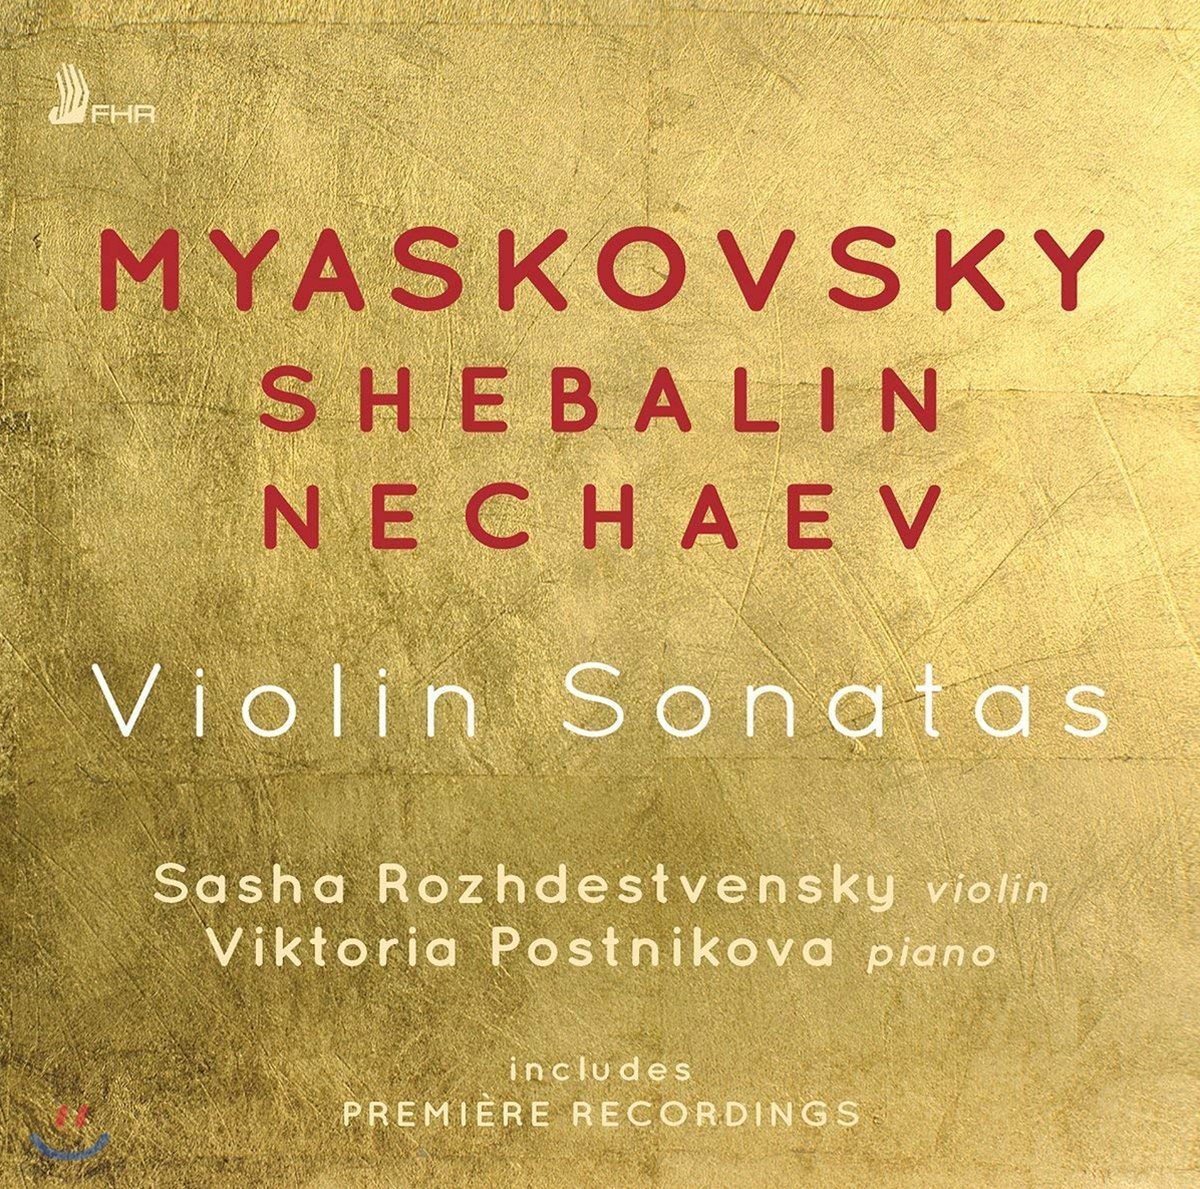 Sasha Rozhdestvensky / Viktoria Postnikova 미야스코프스키 / 셰발린 / 네차예프: 바이올린 소나타 (Myaskovsky / Shebalin / Nechaev: Violin Sonatas)